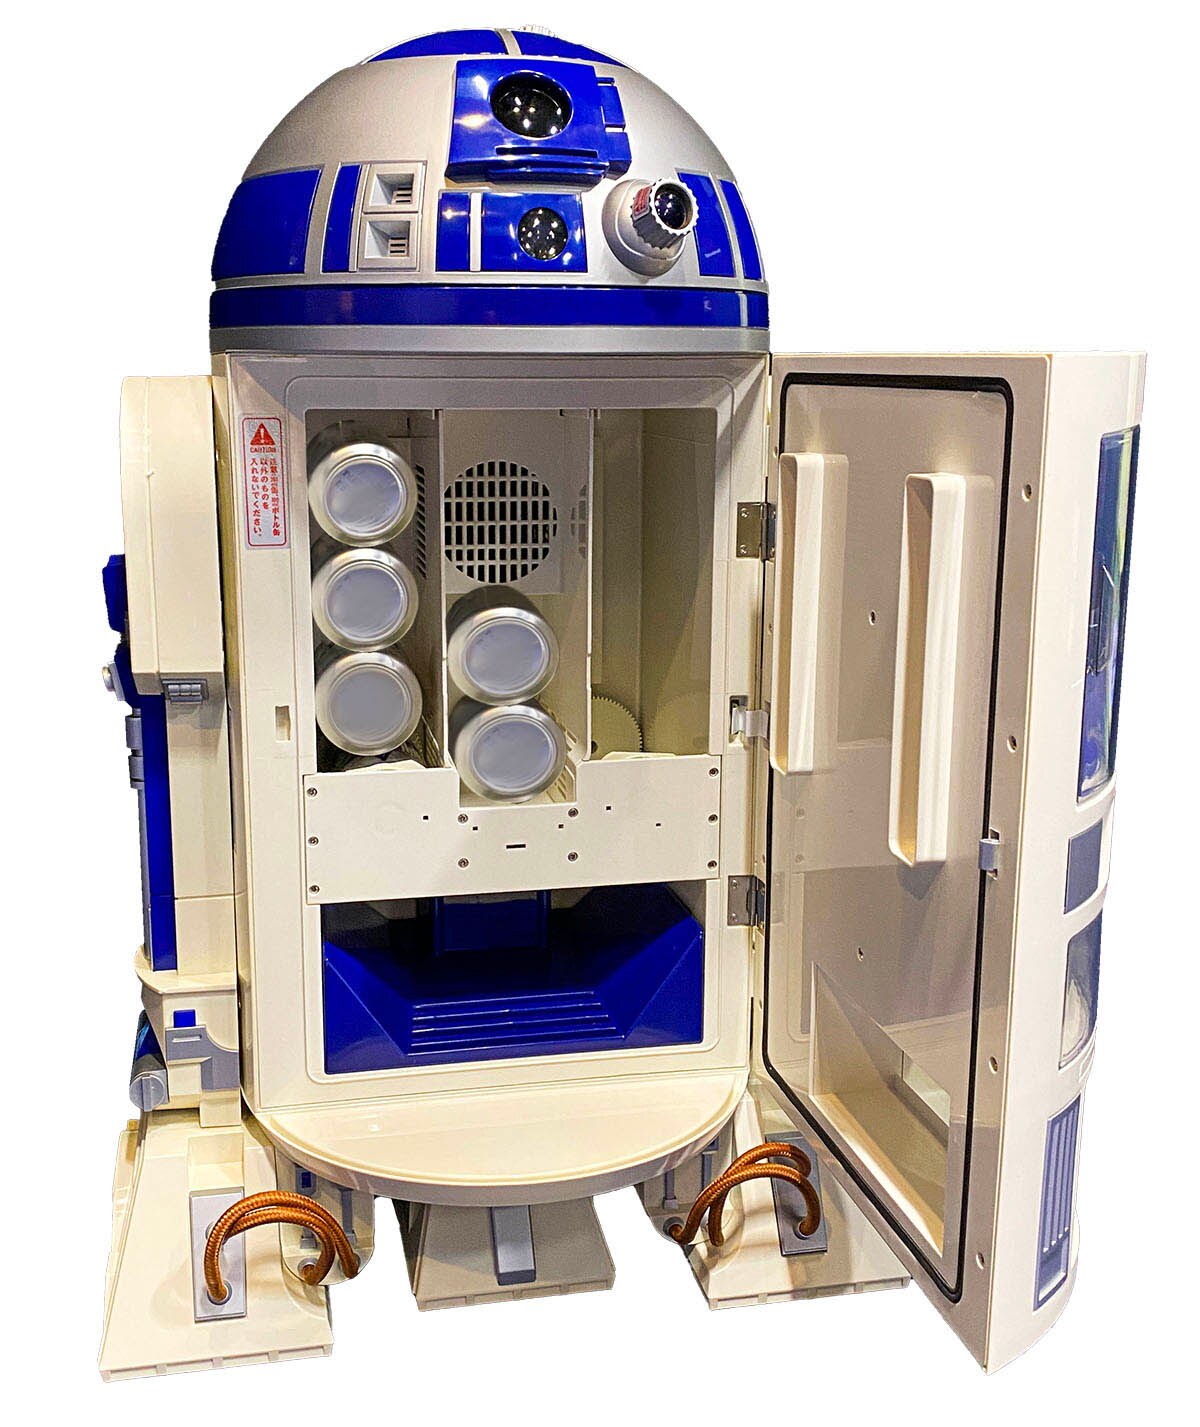 ペプシ R2-D2 ドリンククーラー